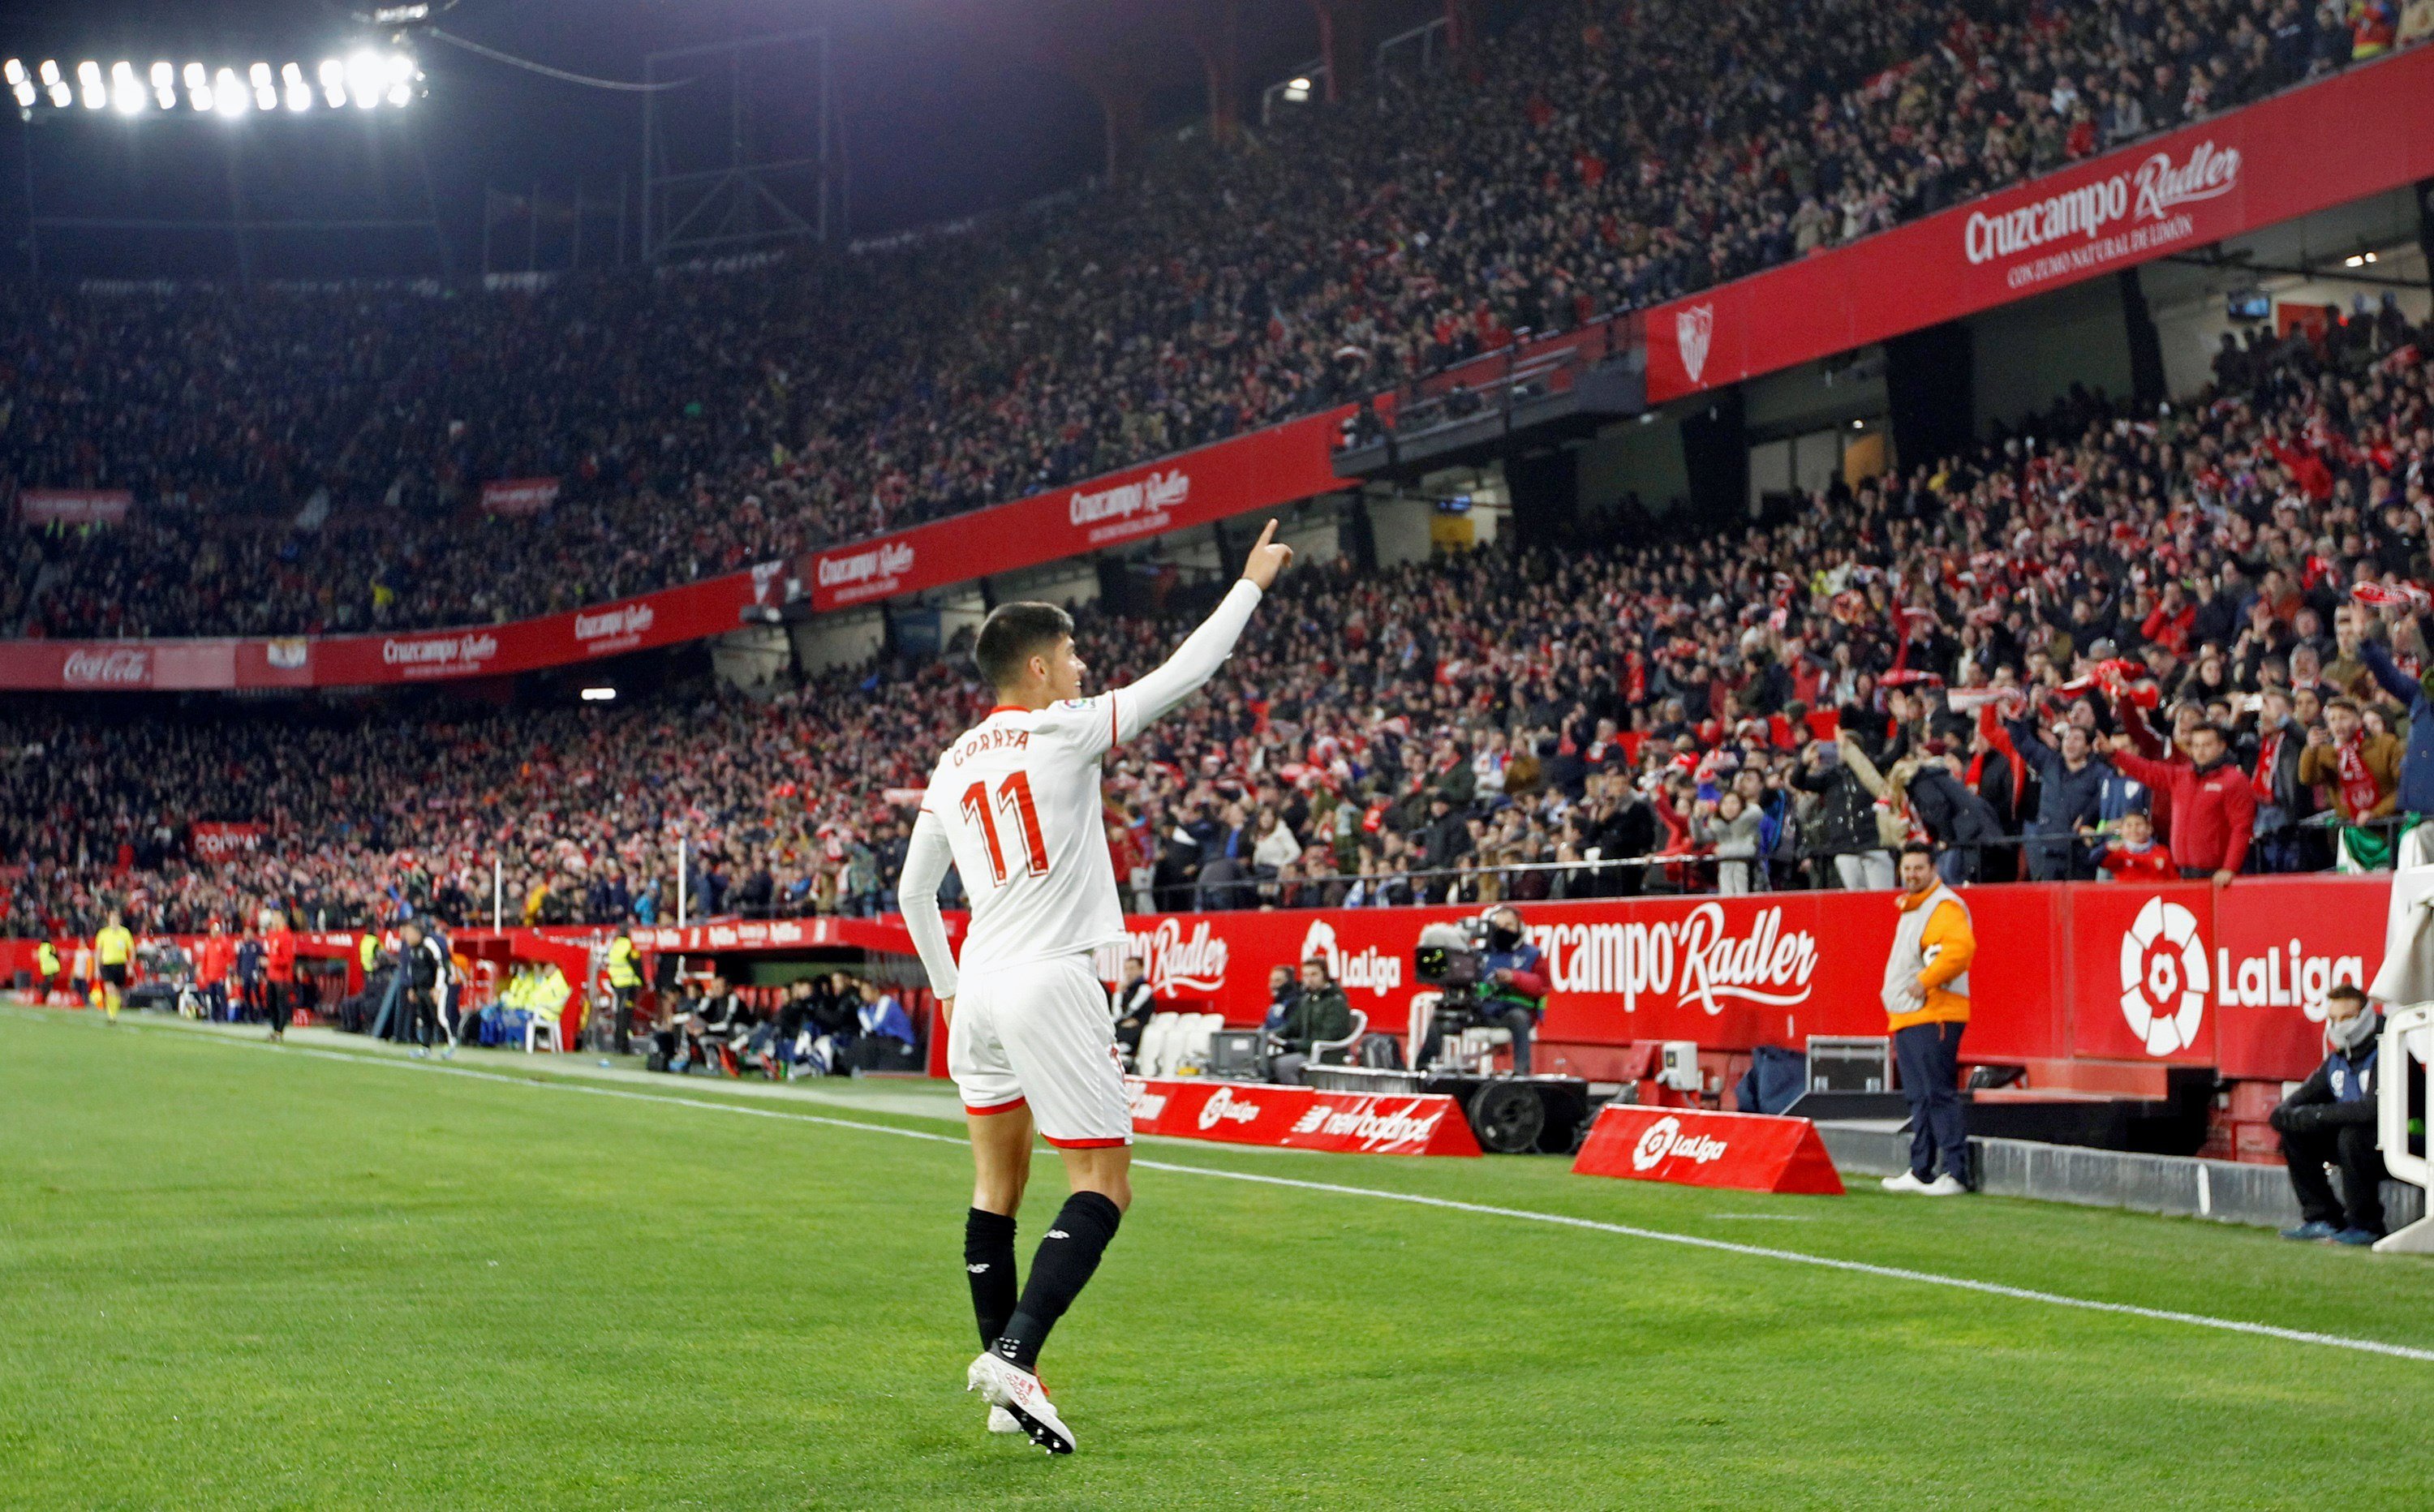 El Sevilla segueix plorant per la Supercopa i allarga el ridícul